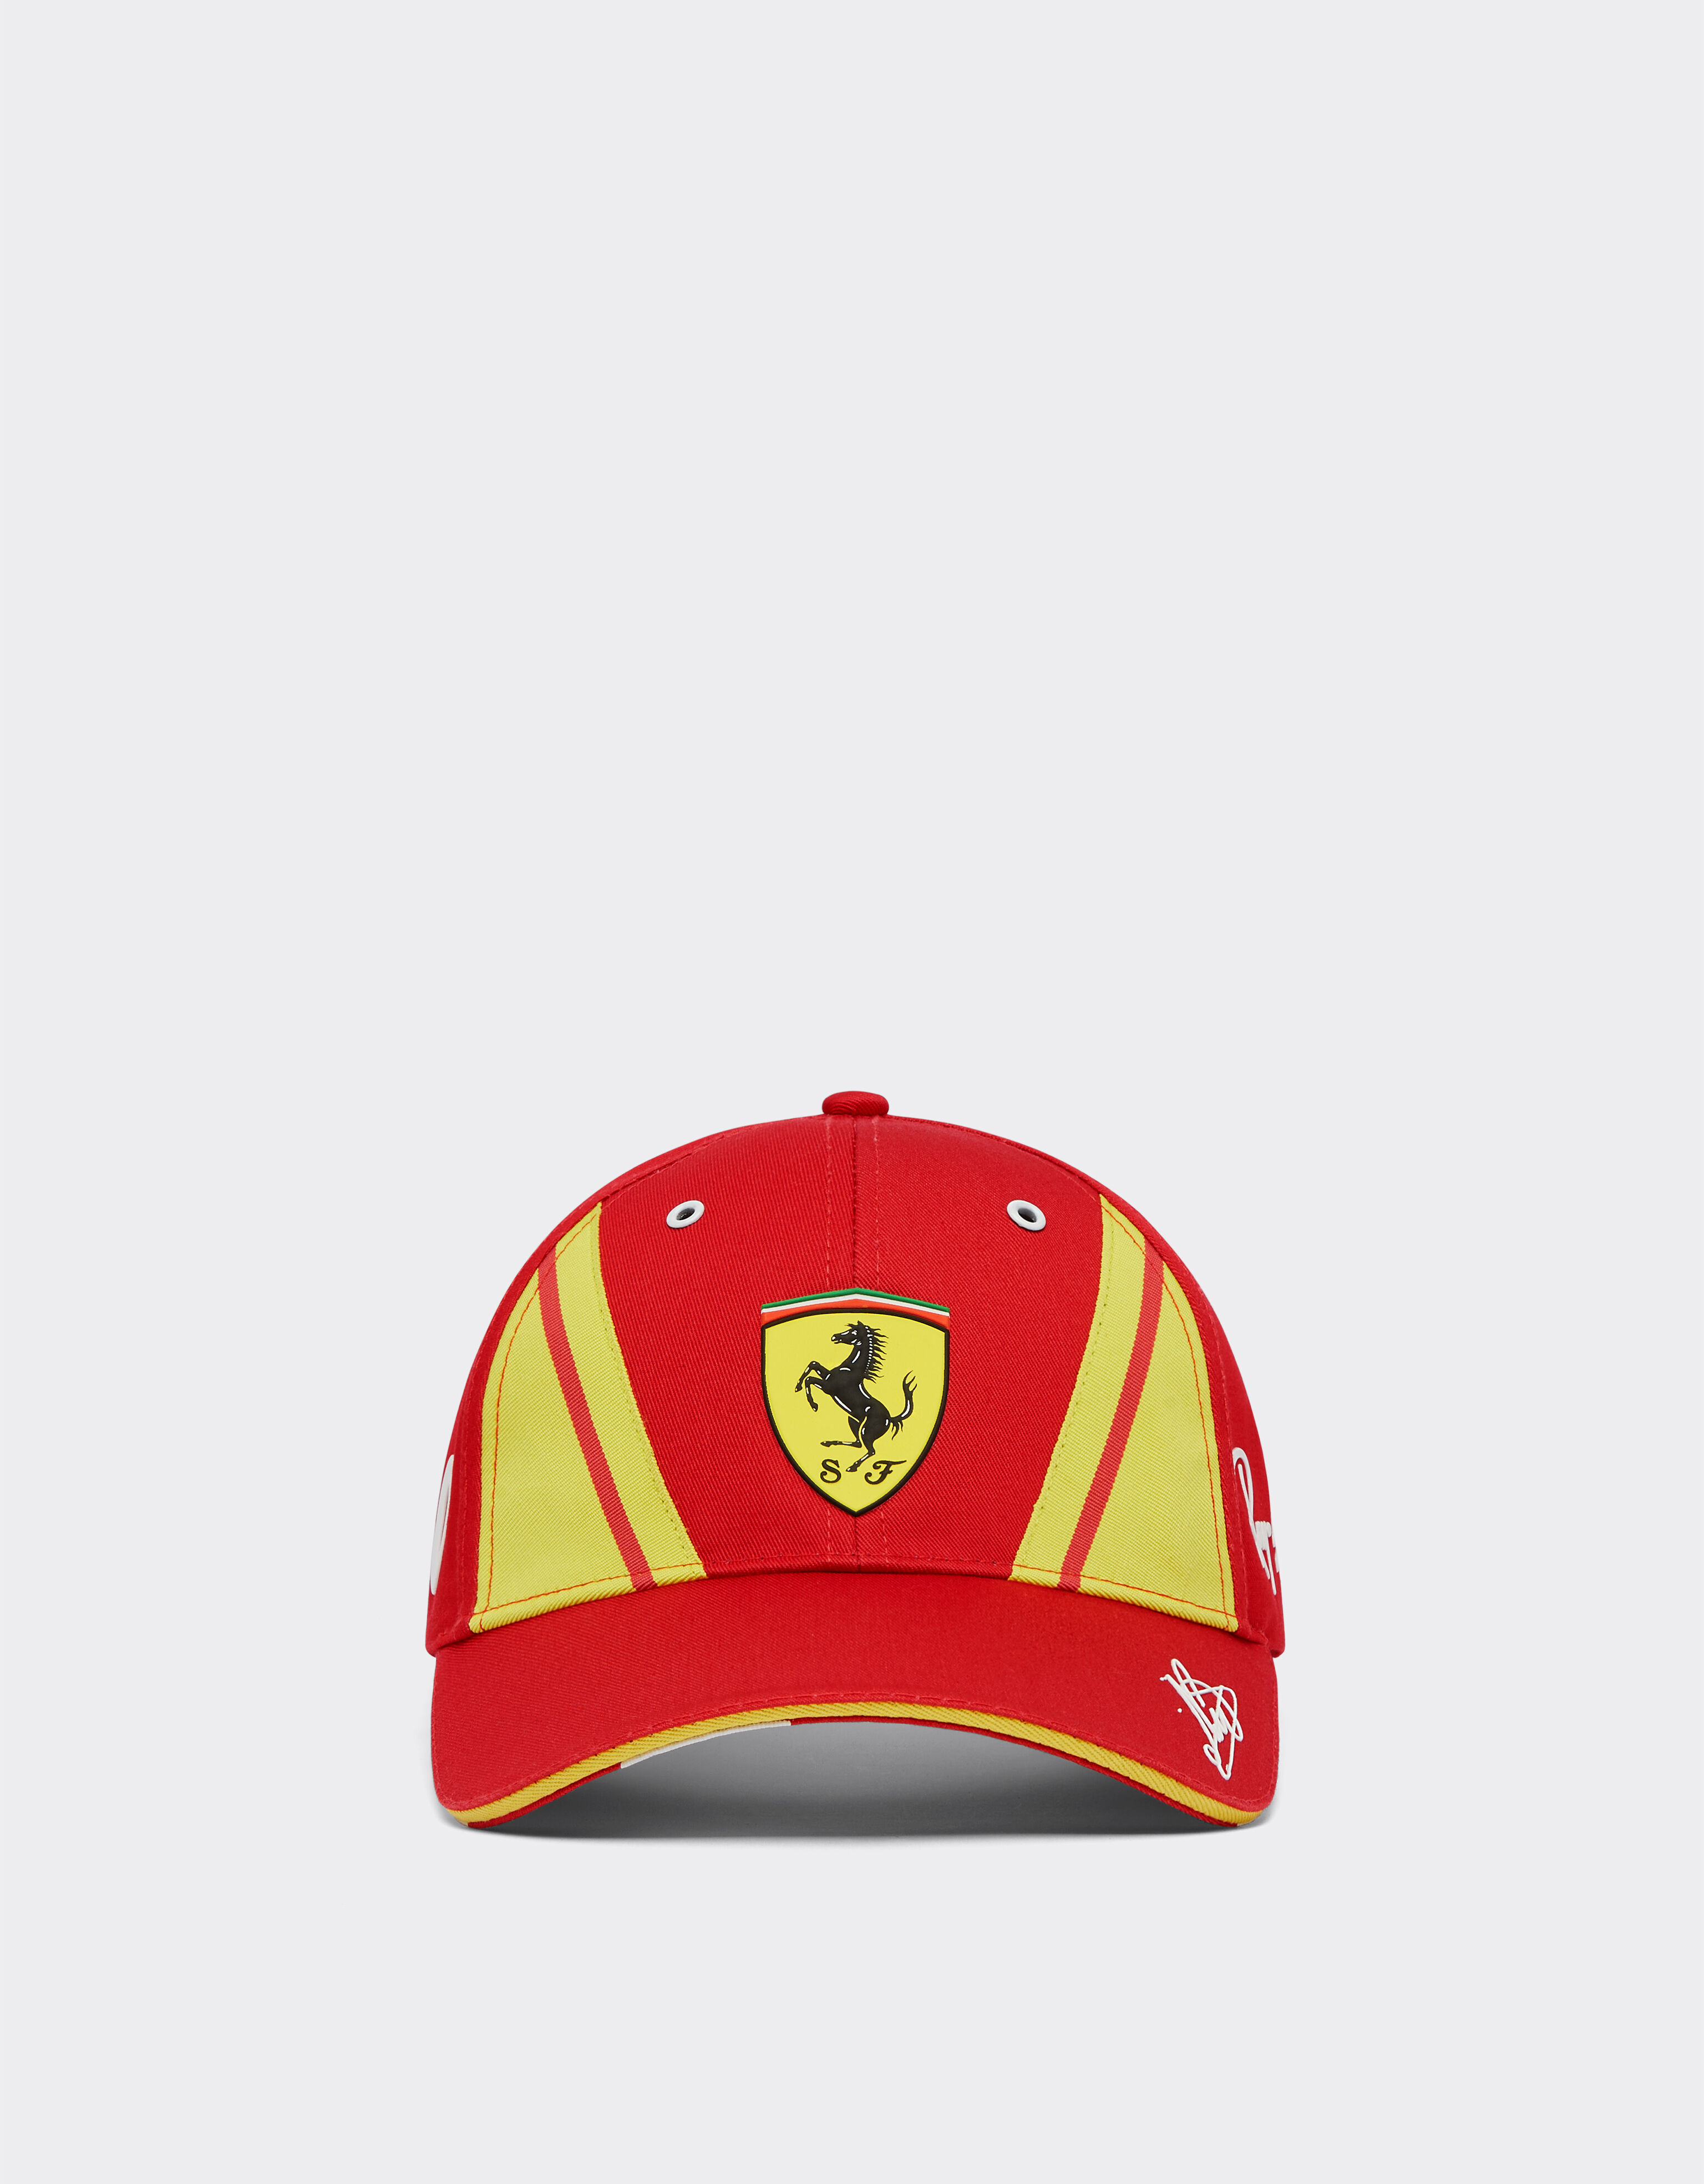 Ferrari Cappellino Nielsen Ferrari Hypercar - Edizione limitata Rosso Corsa F1146f